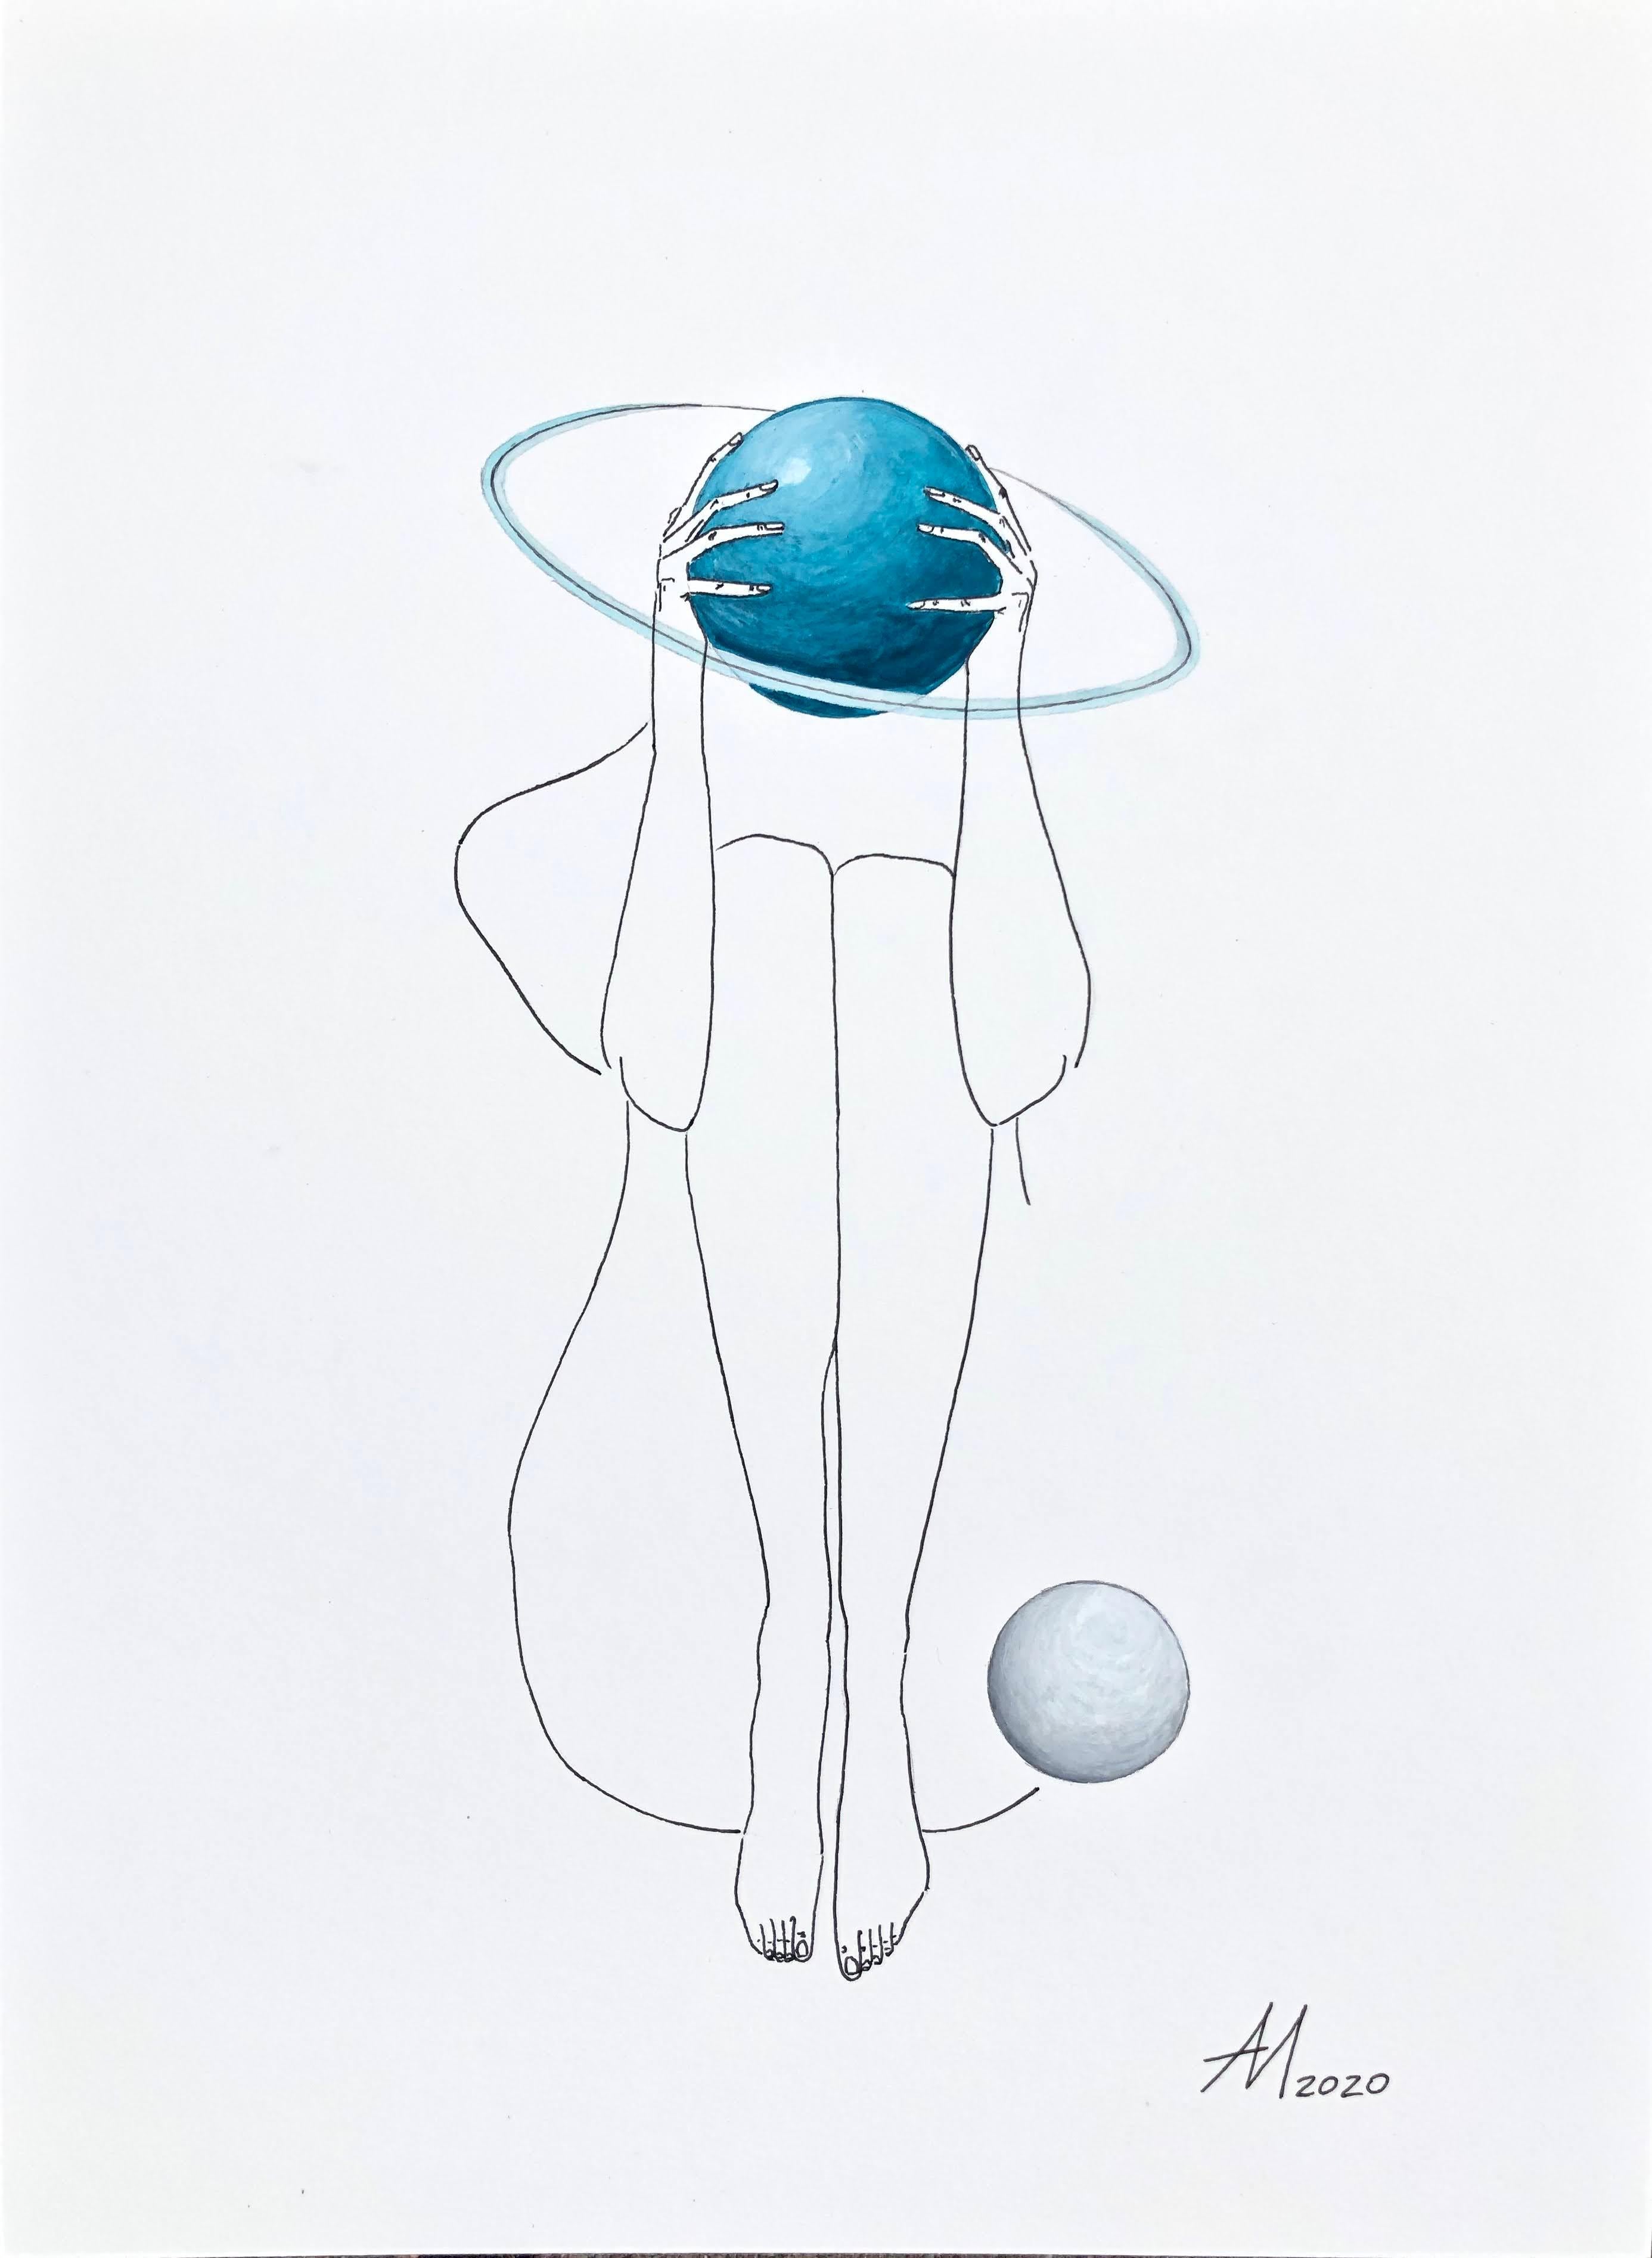 Uranus (Türkisblauer Planet) – Linienzeichnung einer Frauenfigur mit Kreis